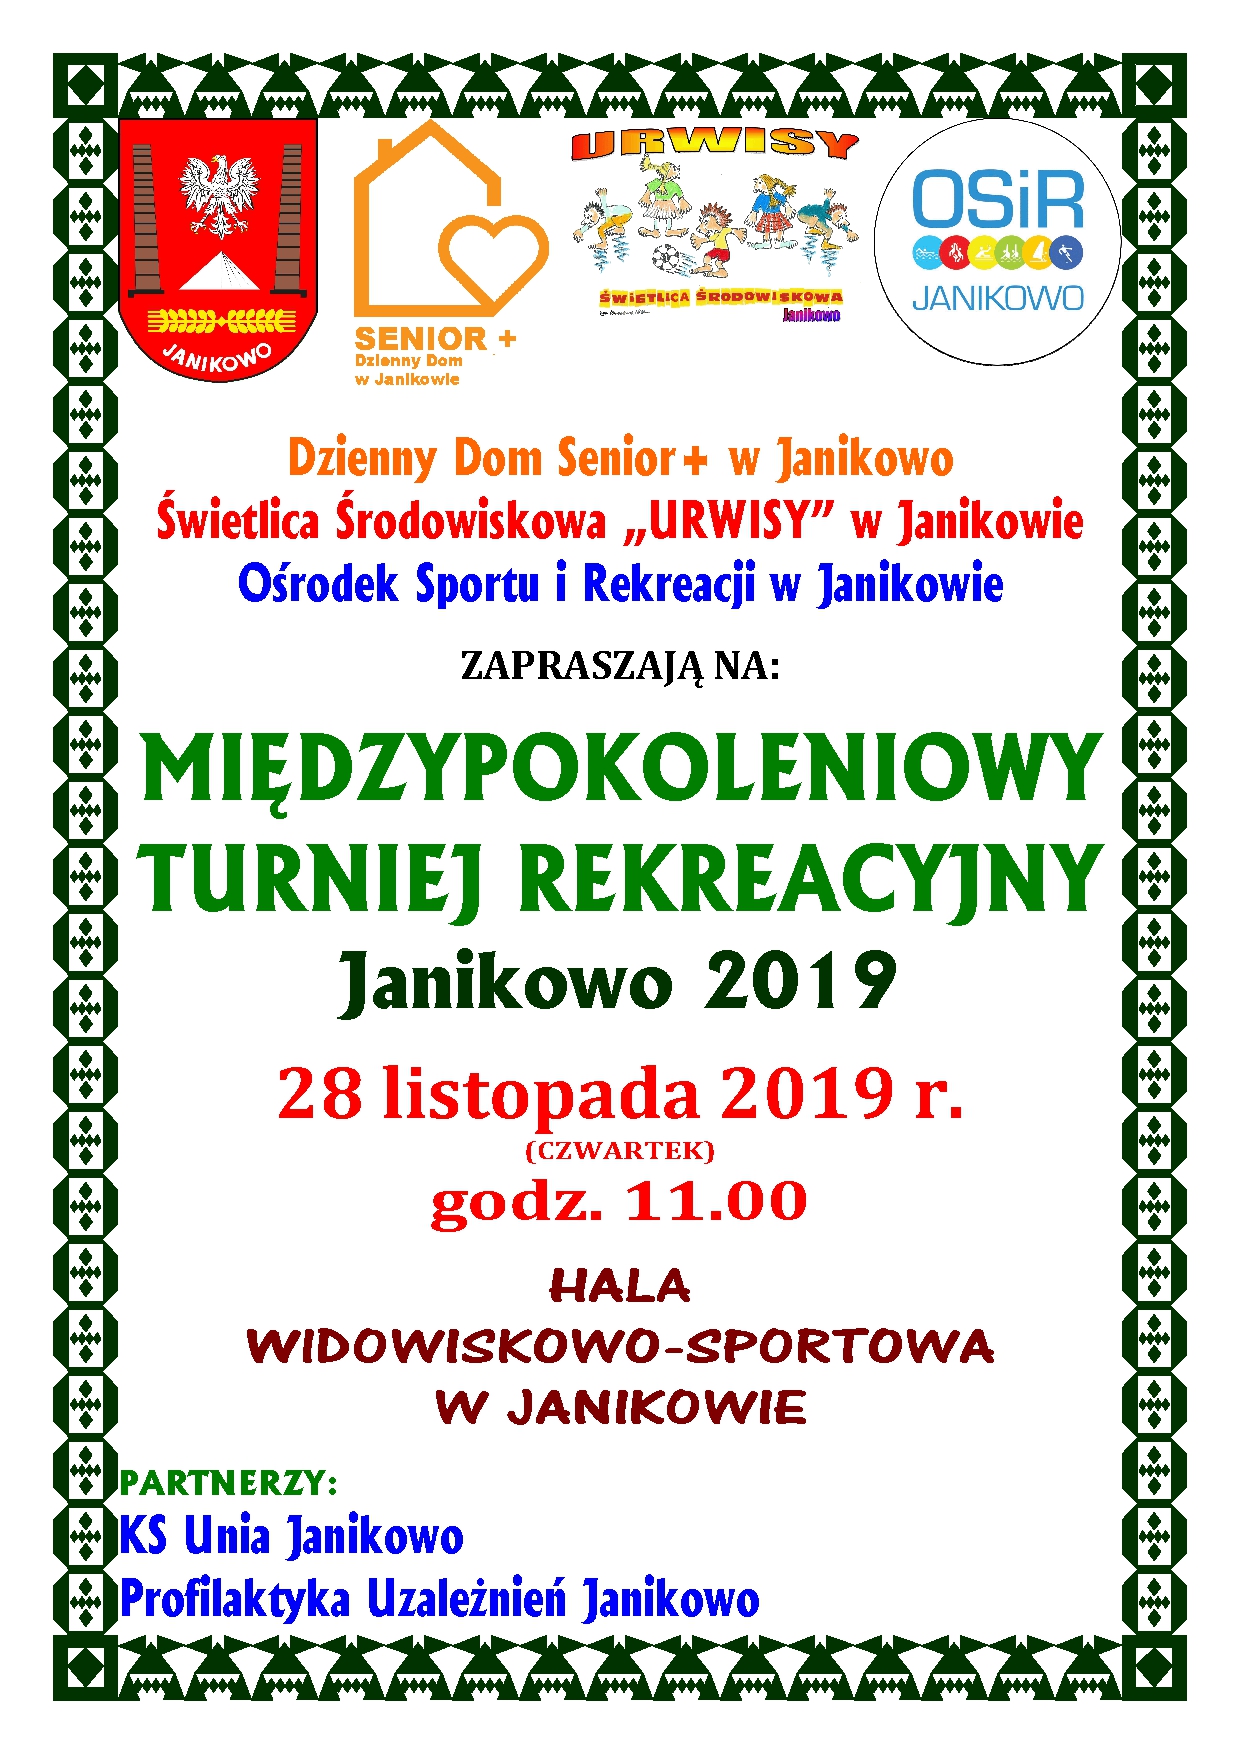 You are currently viewing Międzypokoleniowy Turniej Rekreacyjny